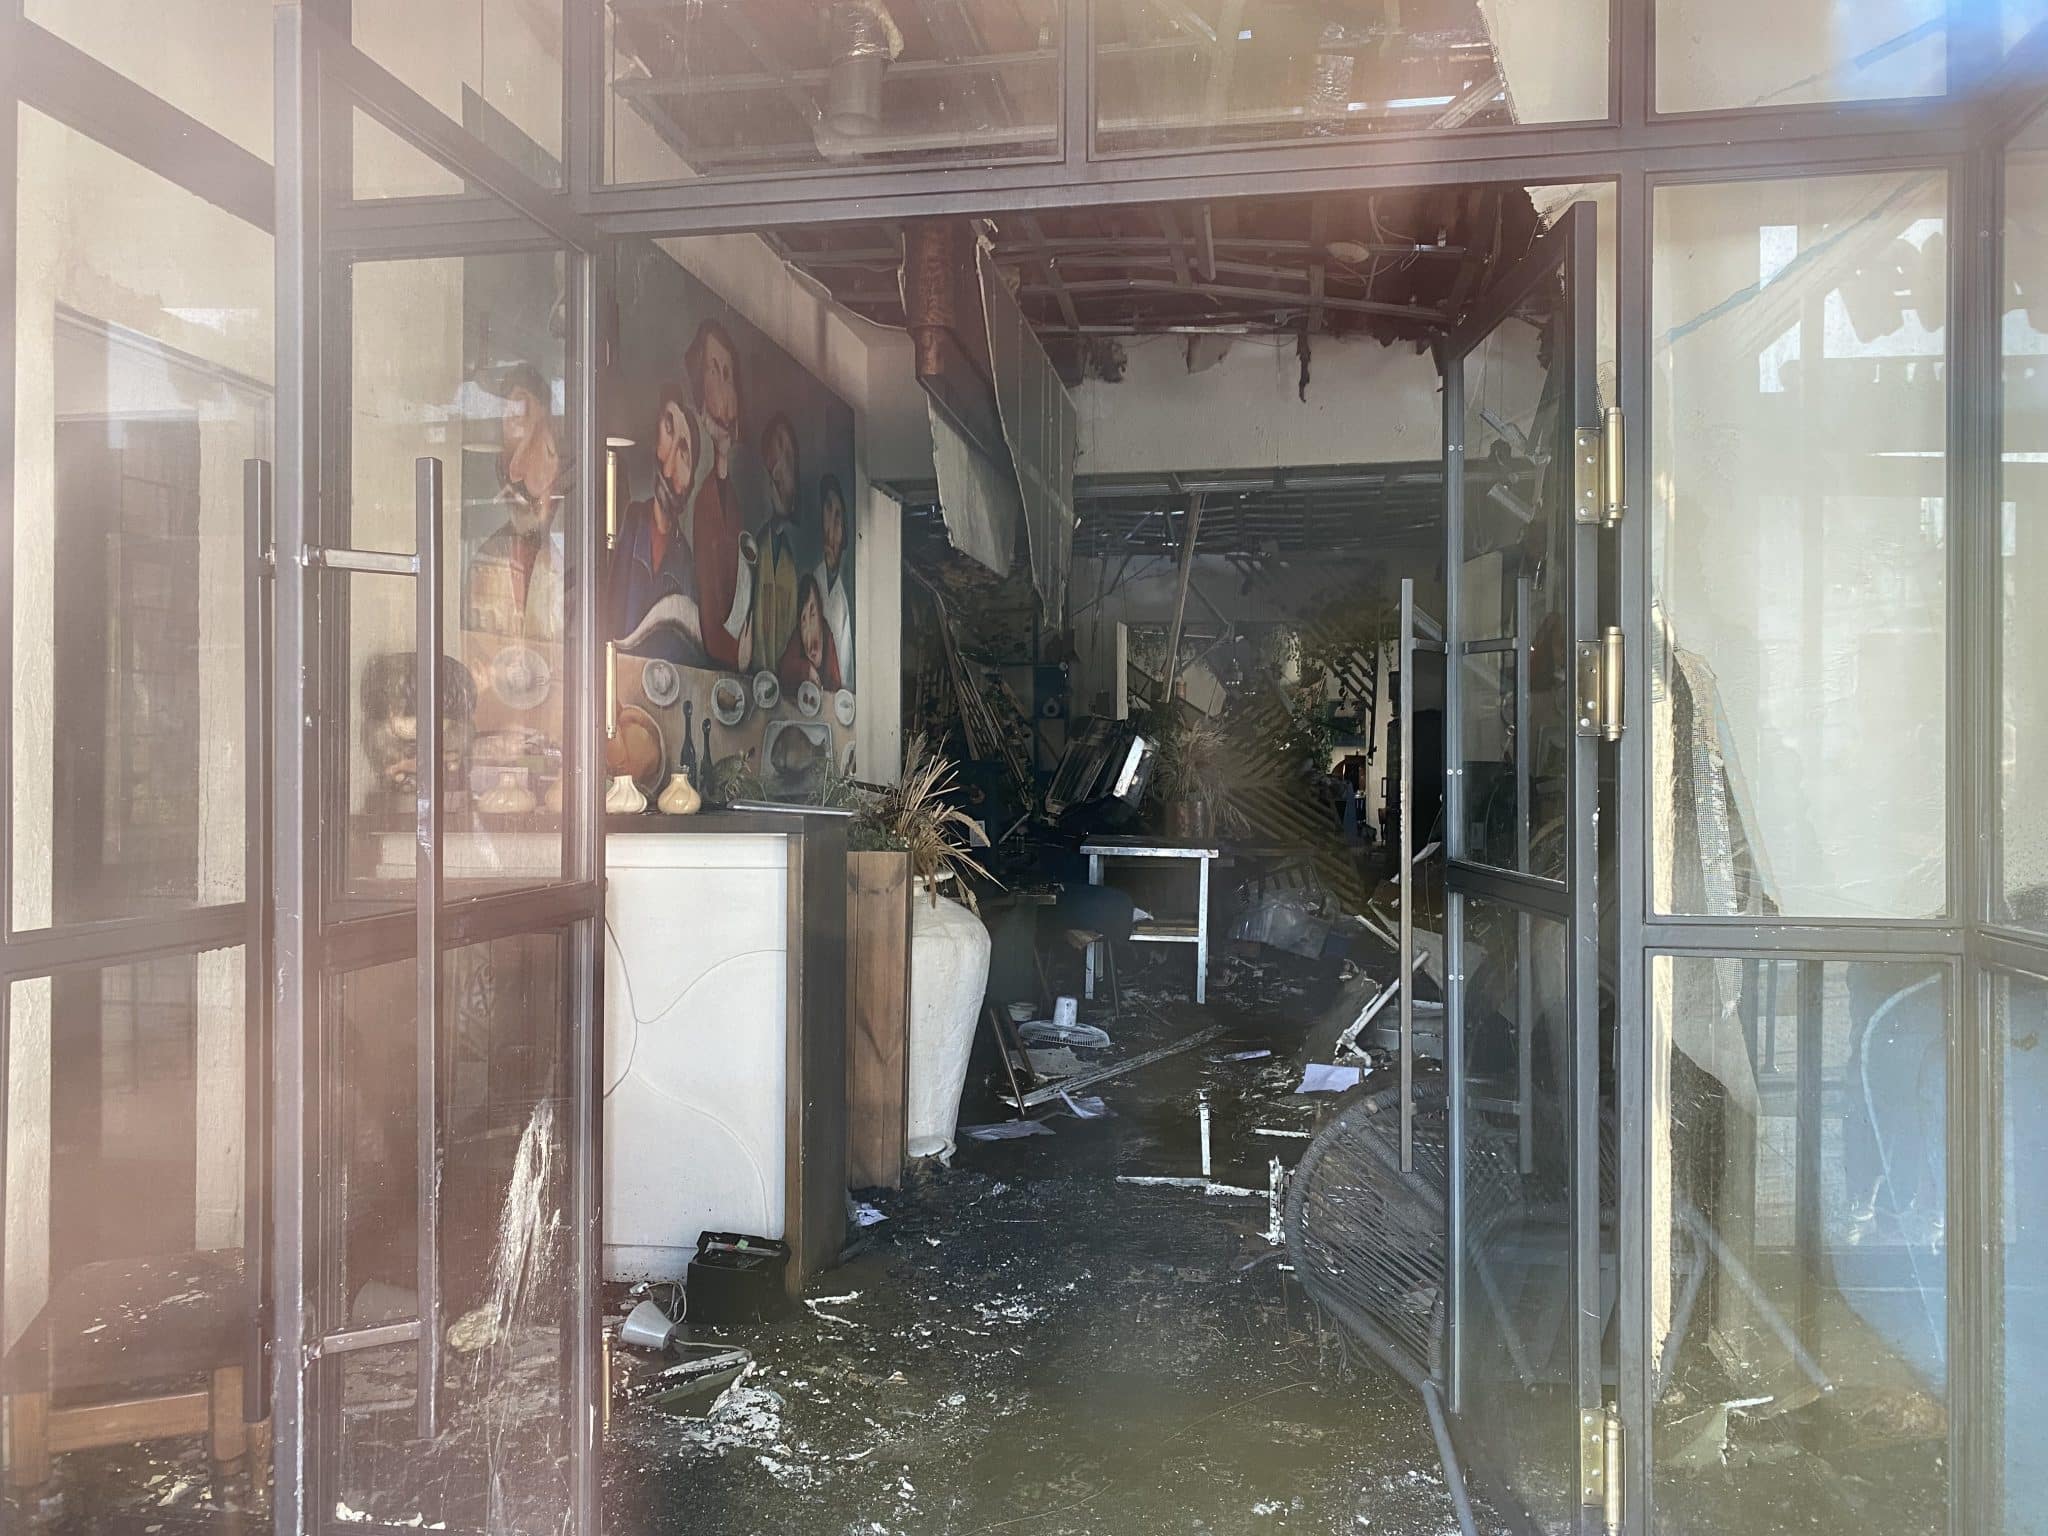 Копоть, вода и уцелевшие грузины - смотрим, как выглядит омский ресторан "Хочу Пури" после пожара